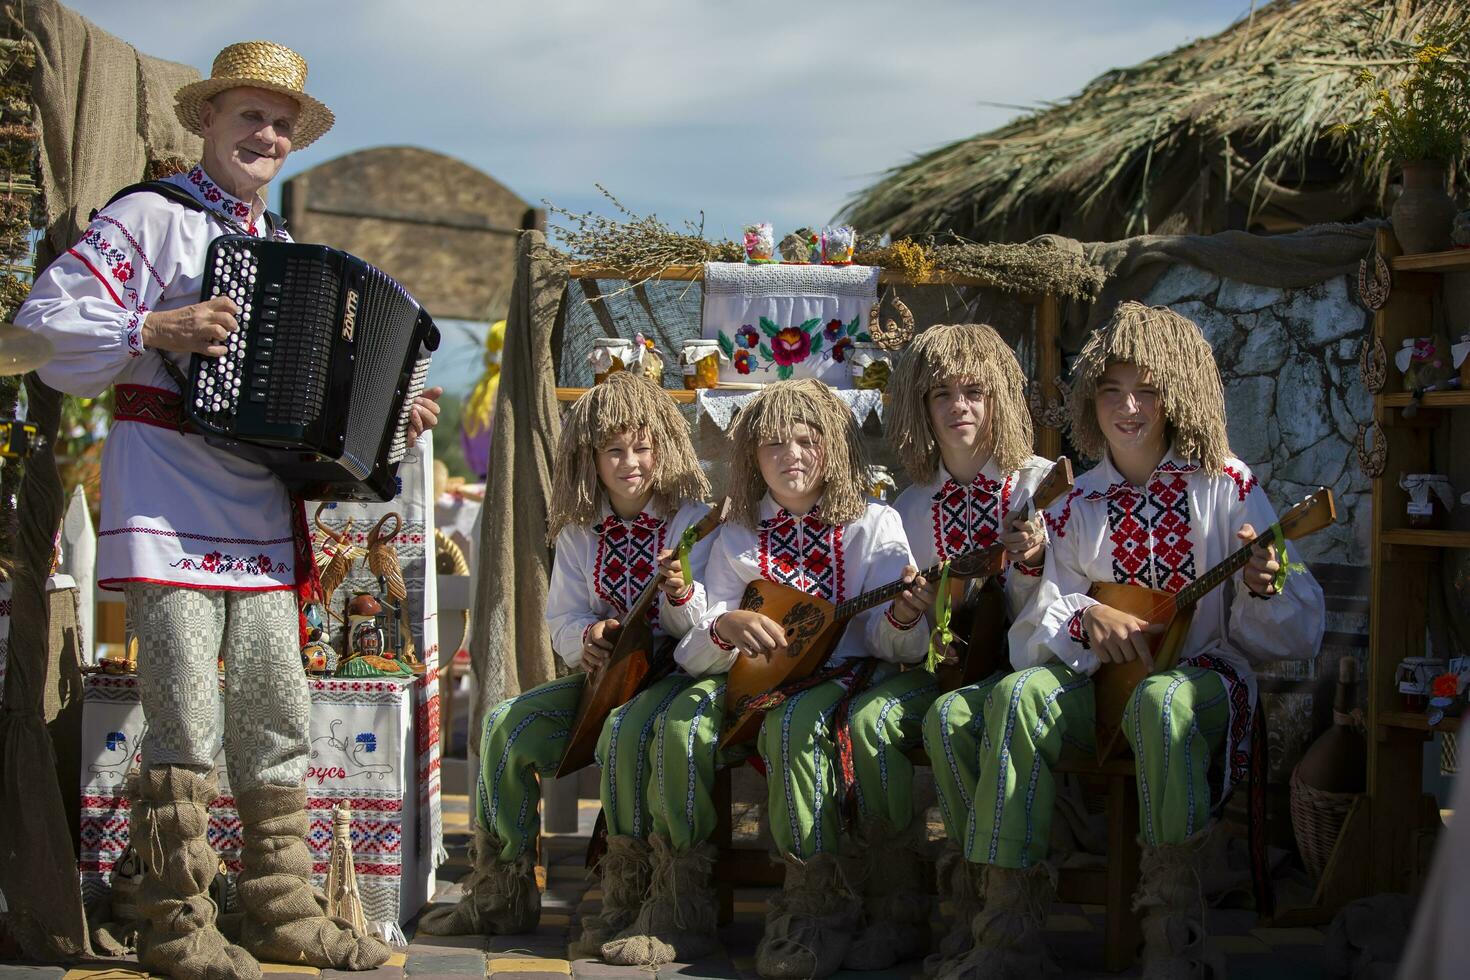 08 29 2020 Biélorussie, lyaskovichi. fête dans le ville. ethnique slave ukrainien ou biélorusse les musiciens avec balalaïkas. photo